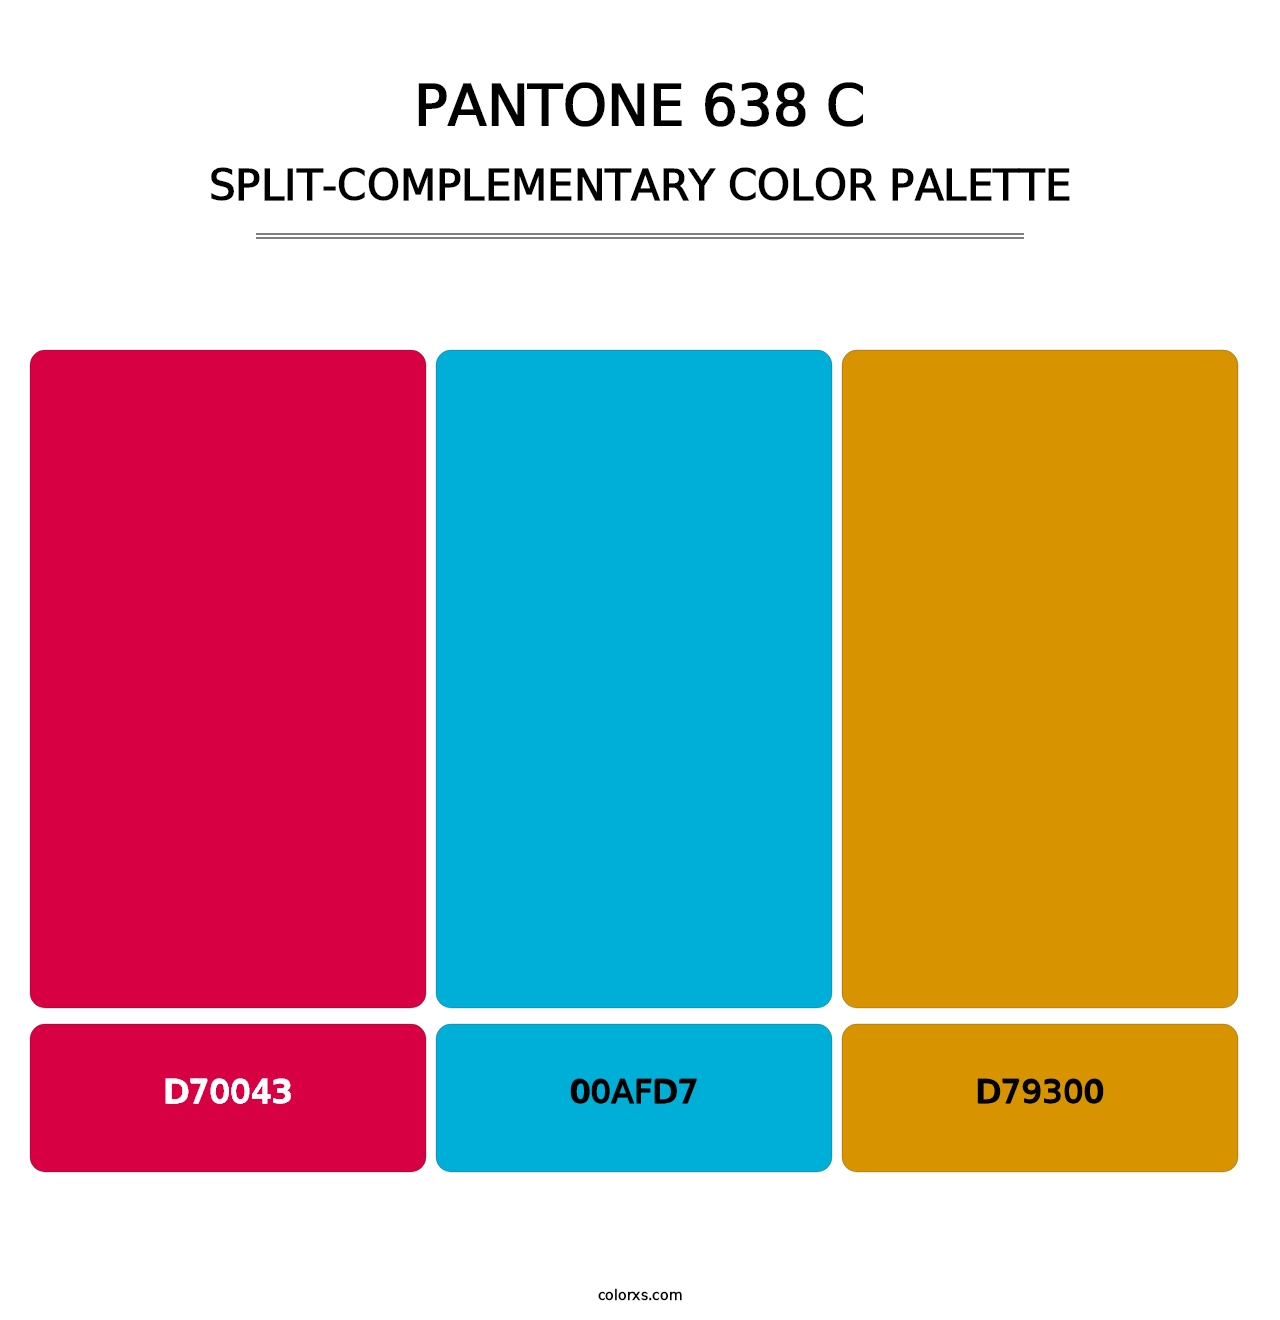 PANTONE 638 C - Split-Complementary Color Palette